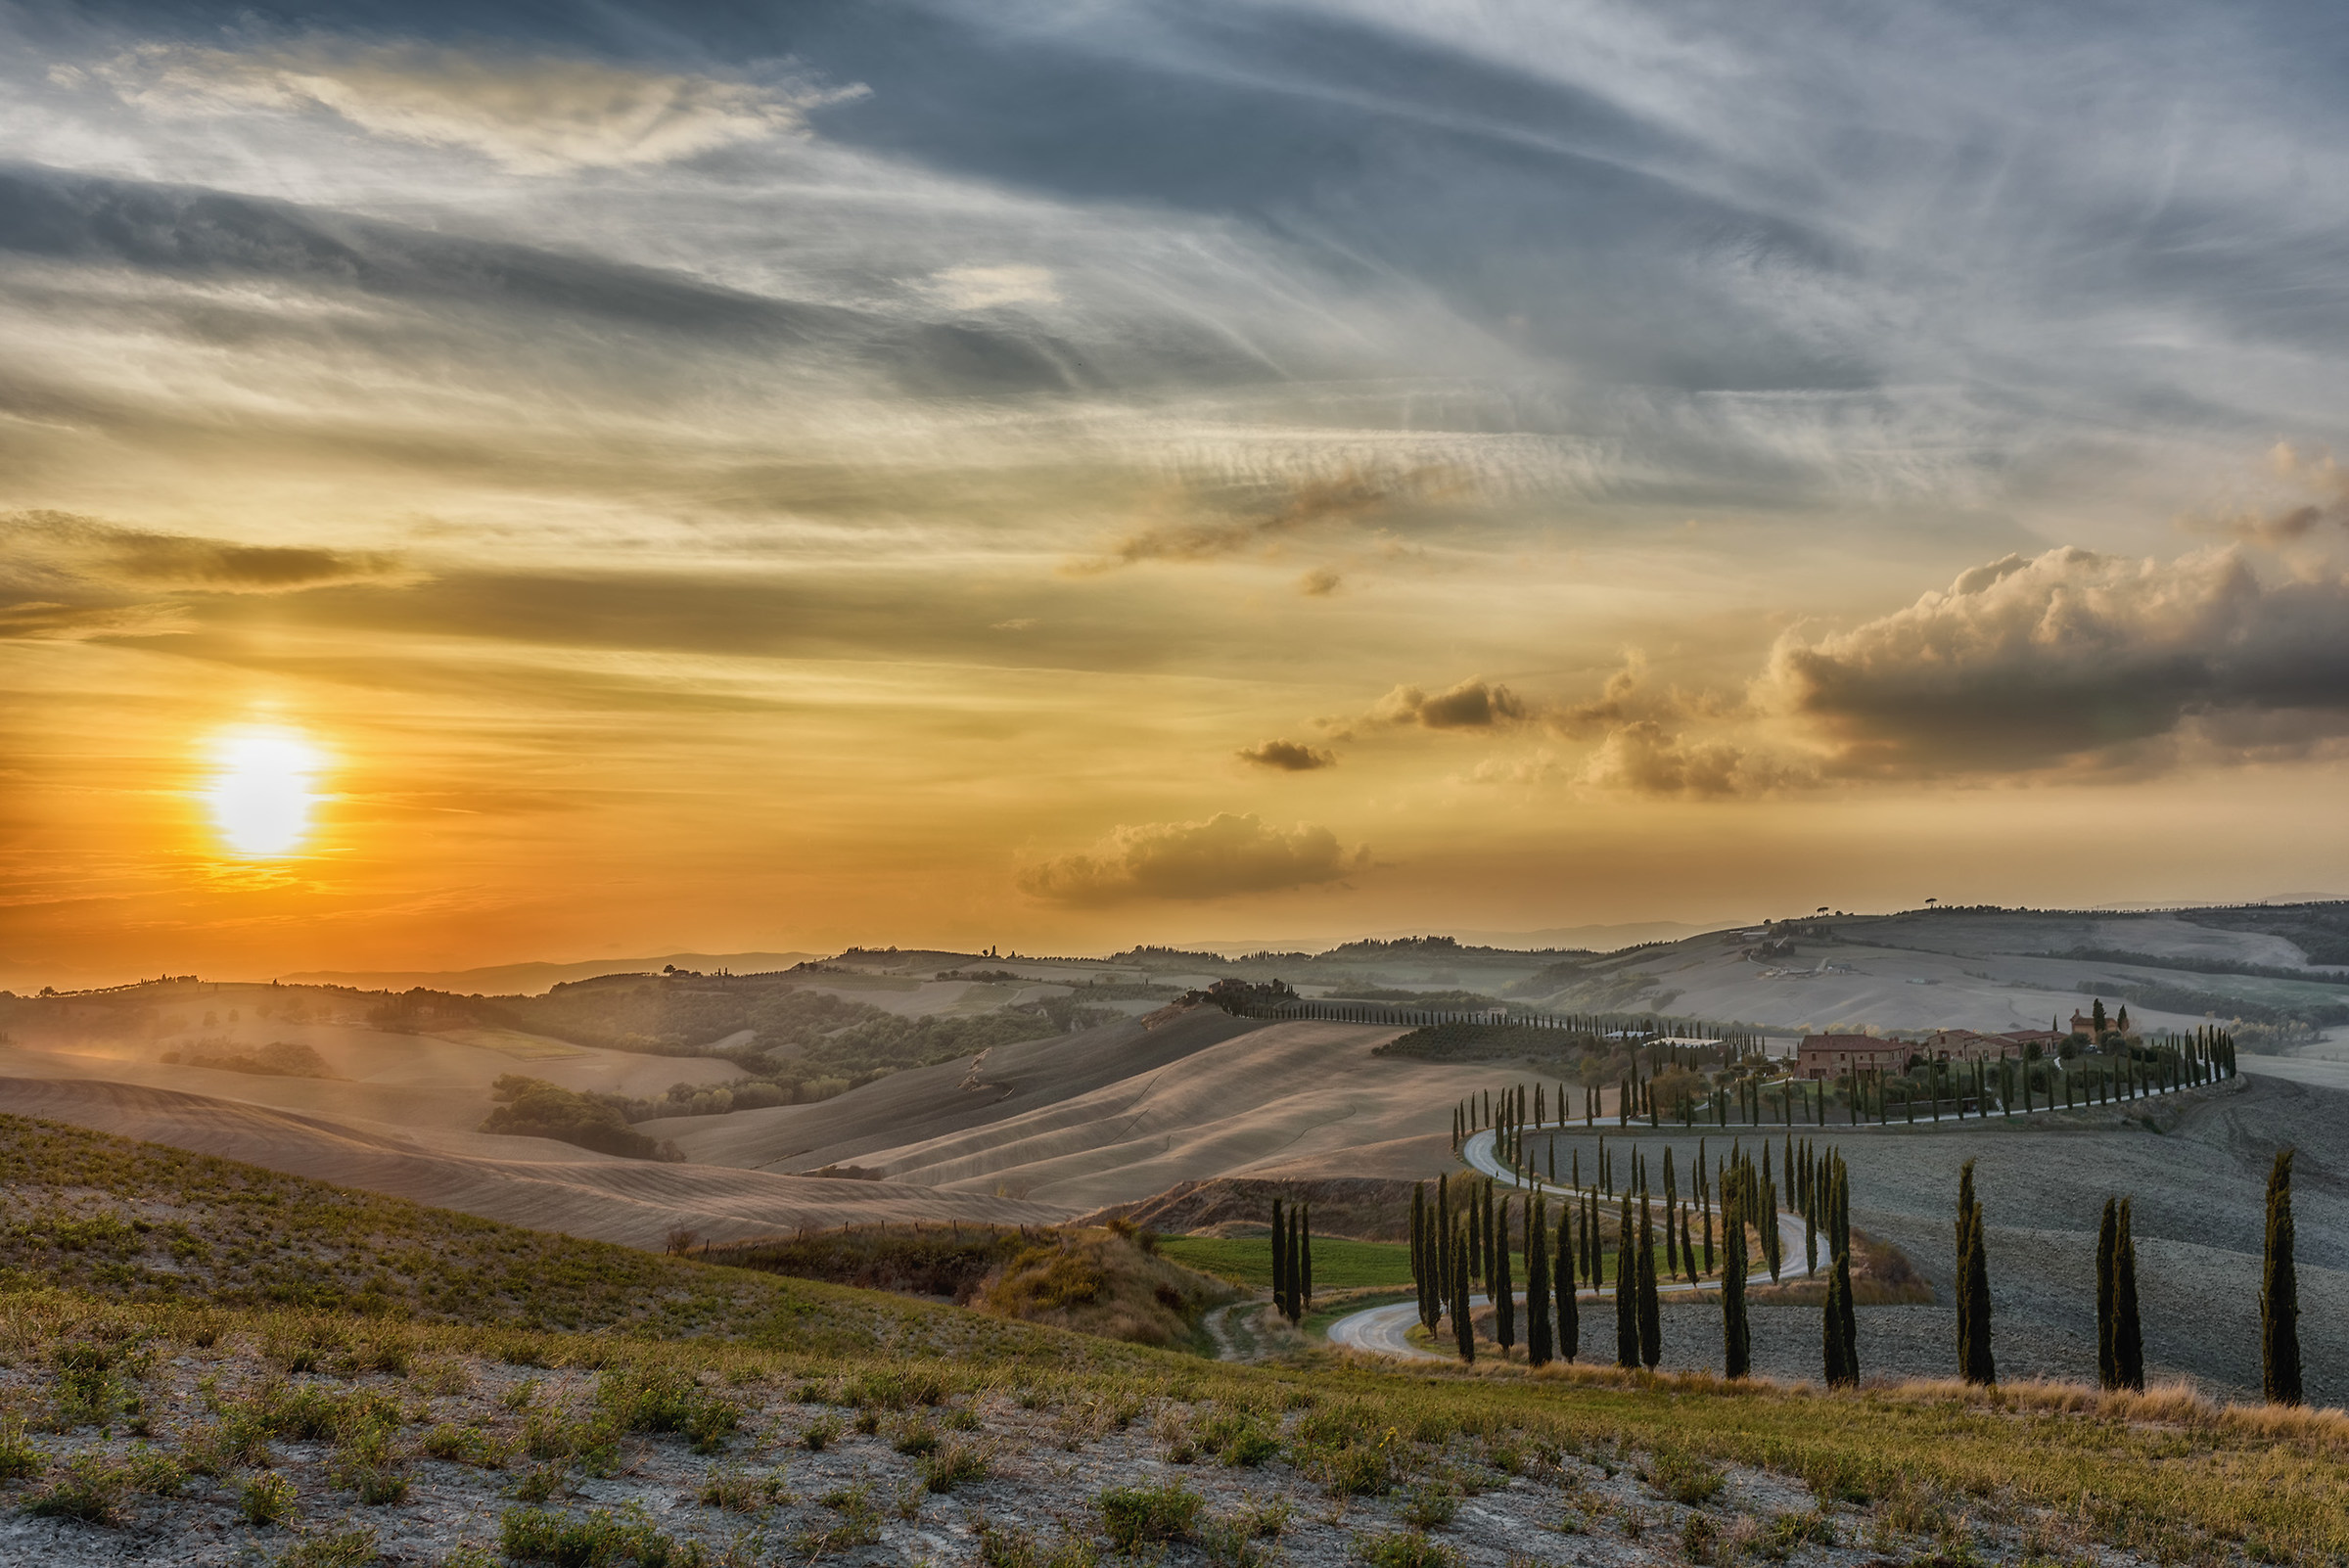 Tuscany dream...